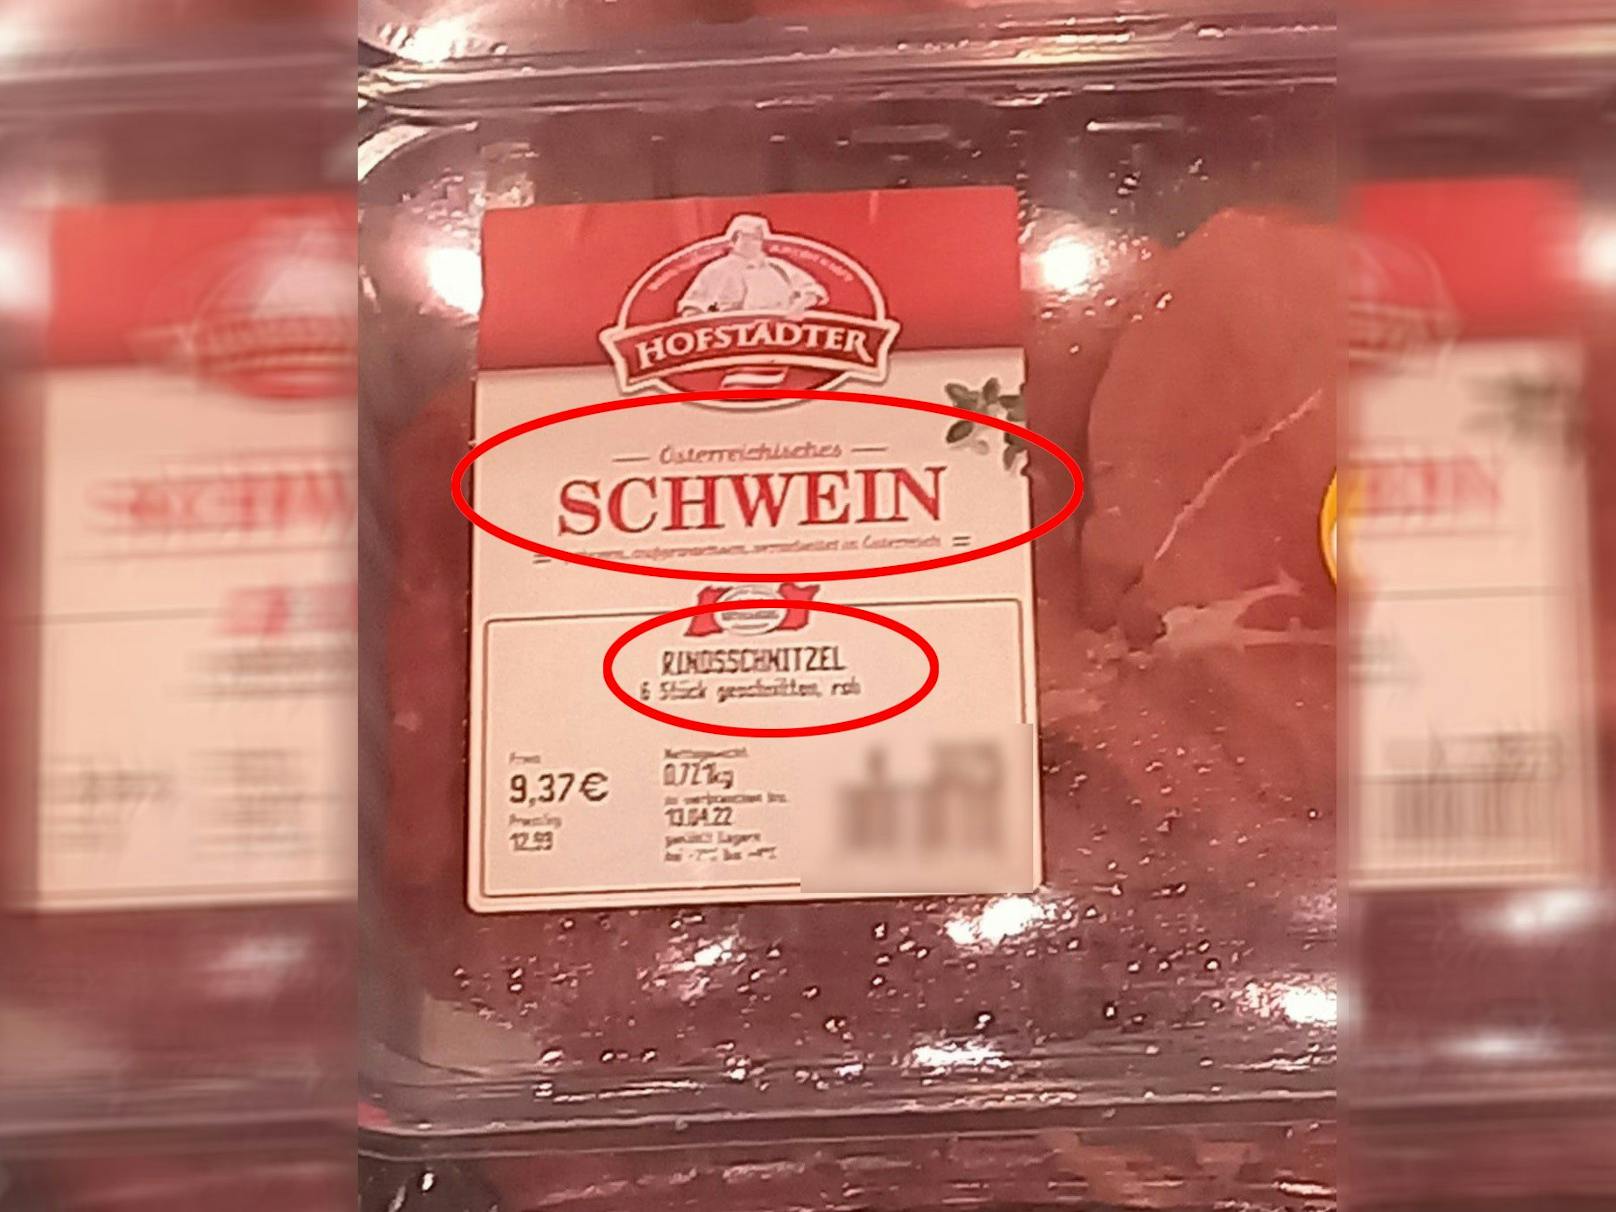 Diese Fleischverpackung sorgte in Niederösterreich für ordentlich Verwirrung.